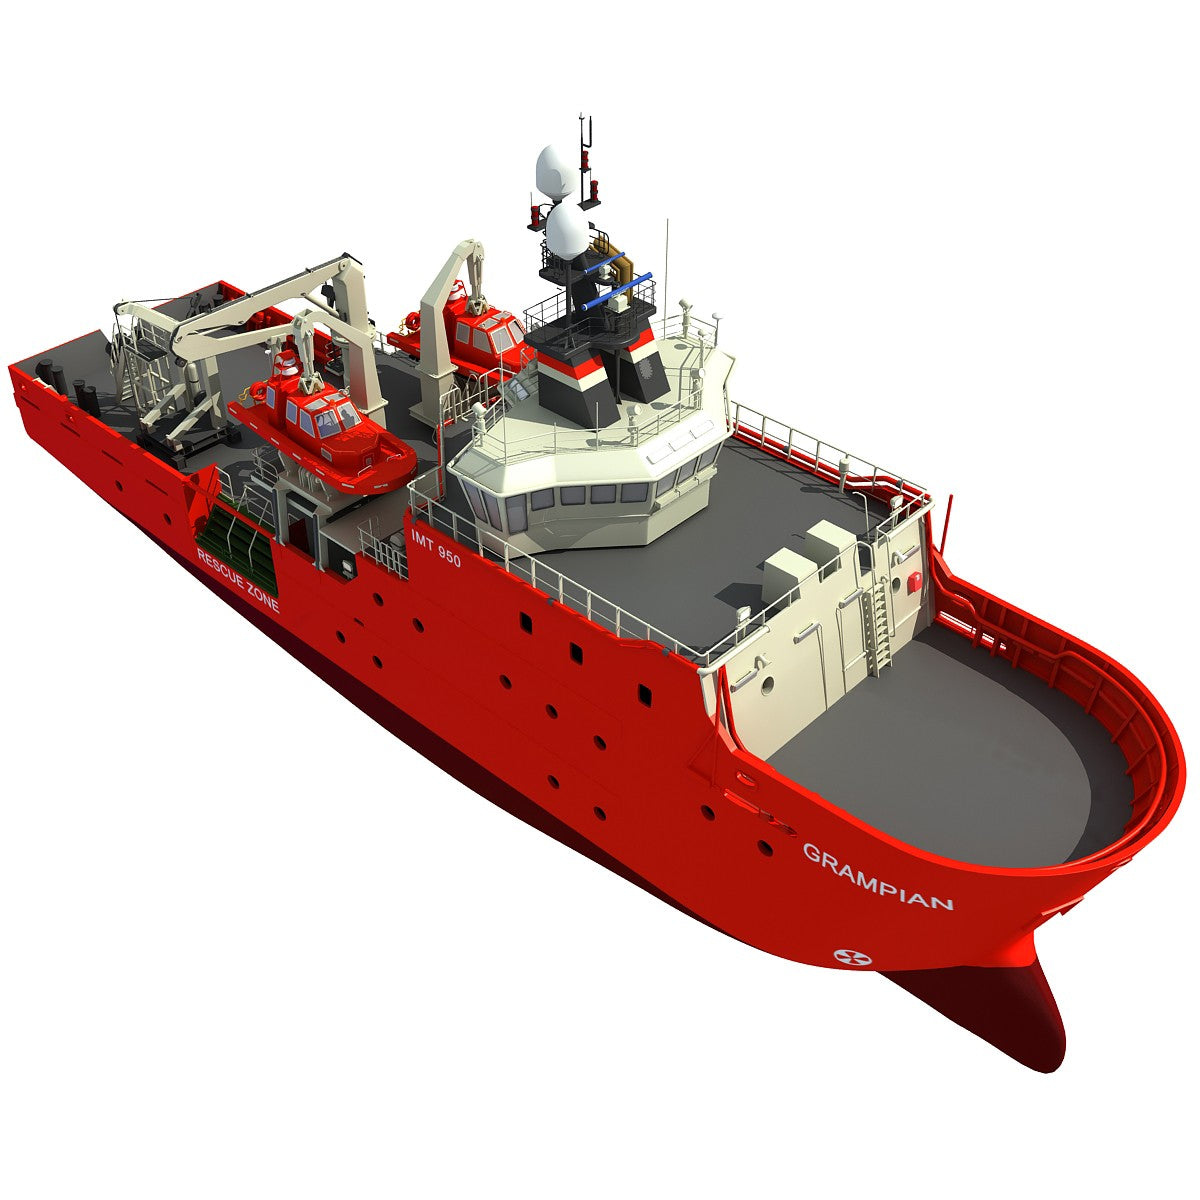 Grampian Rescue Ship 3D Model